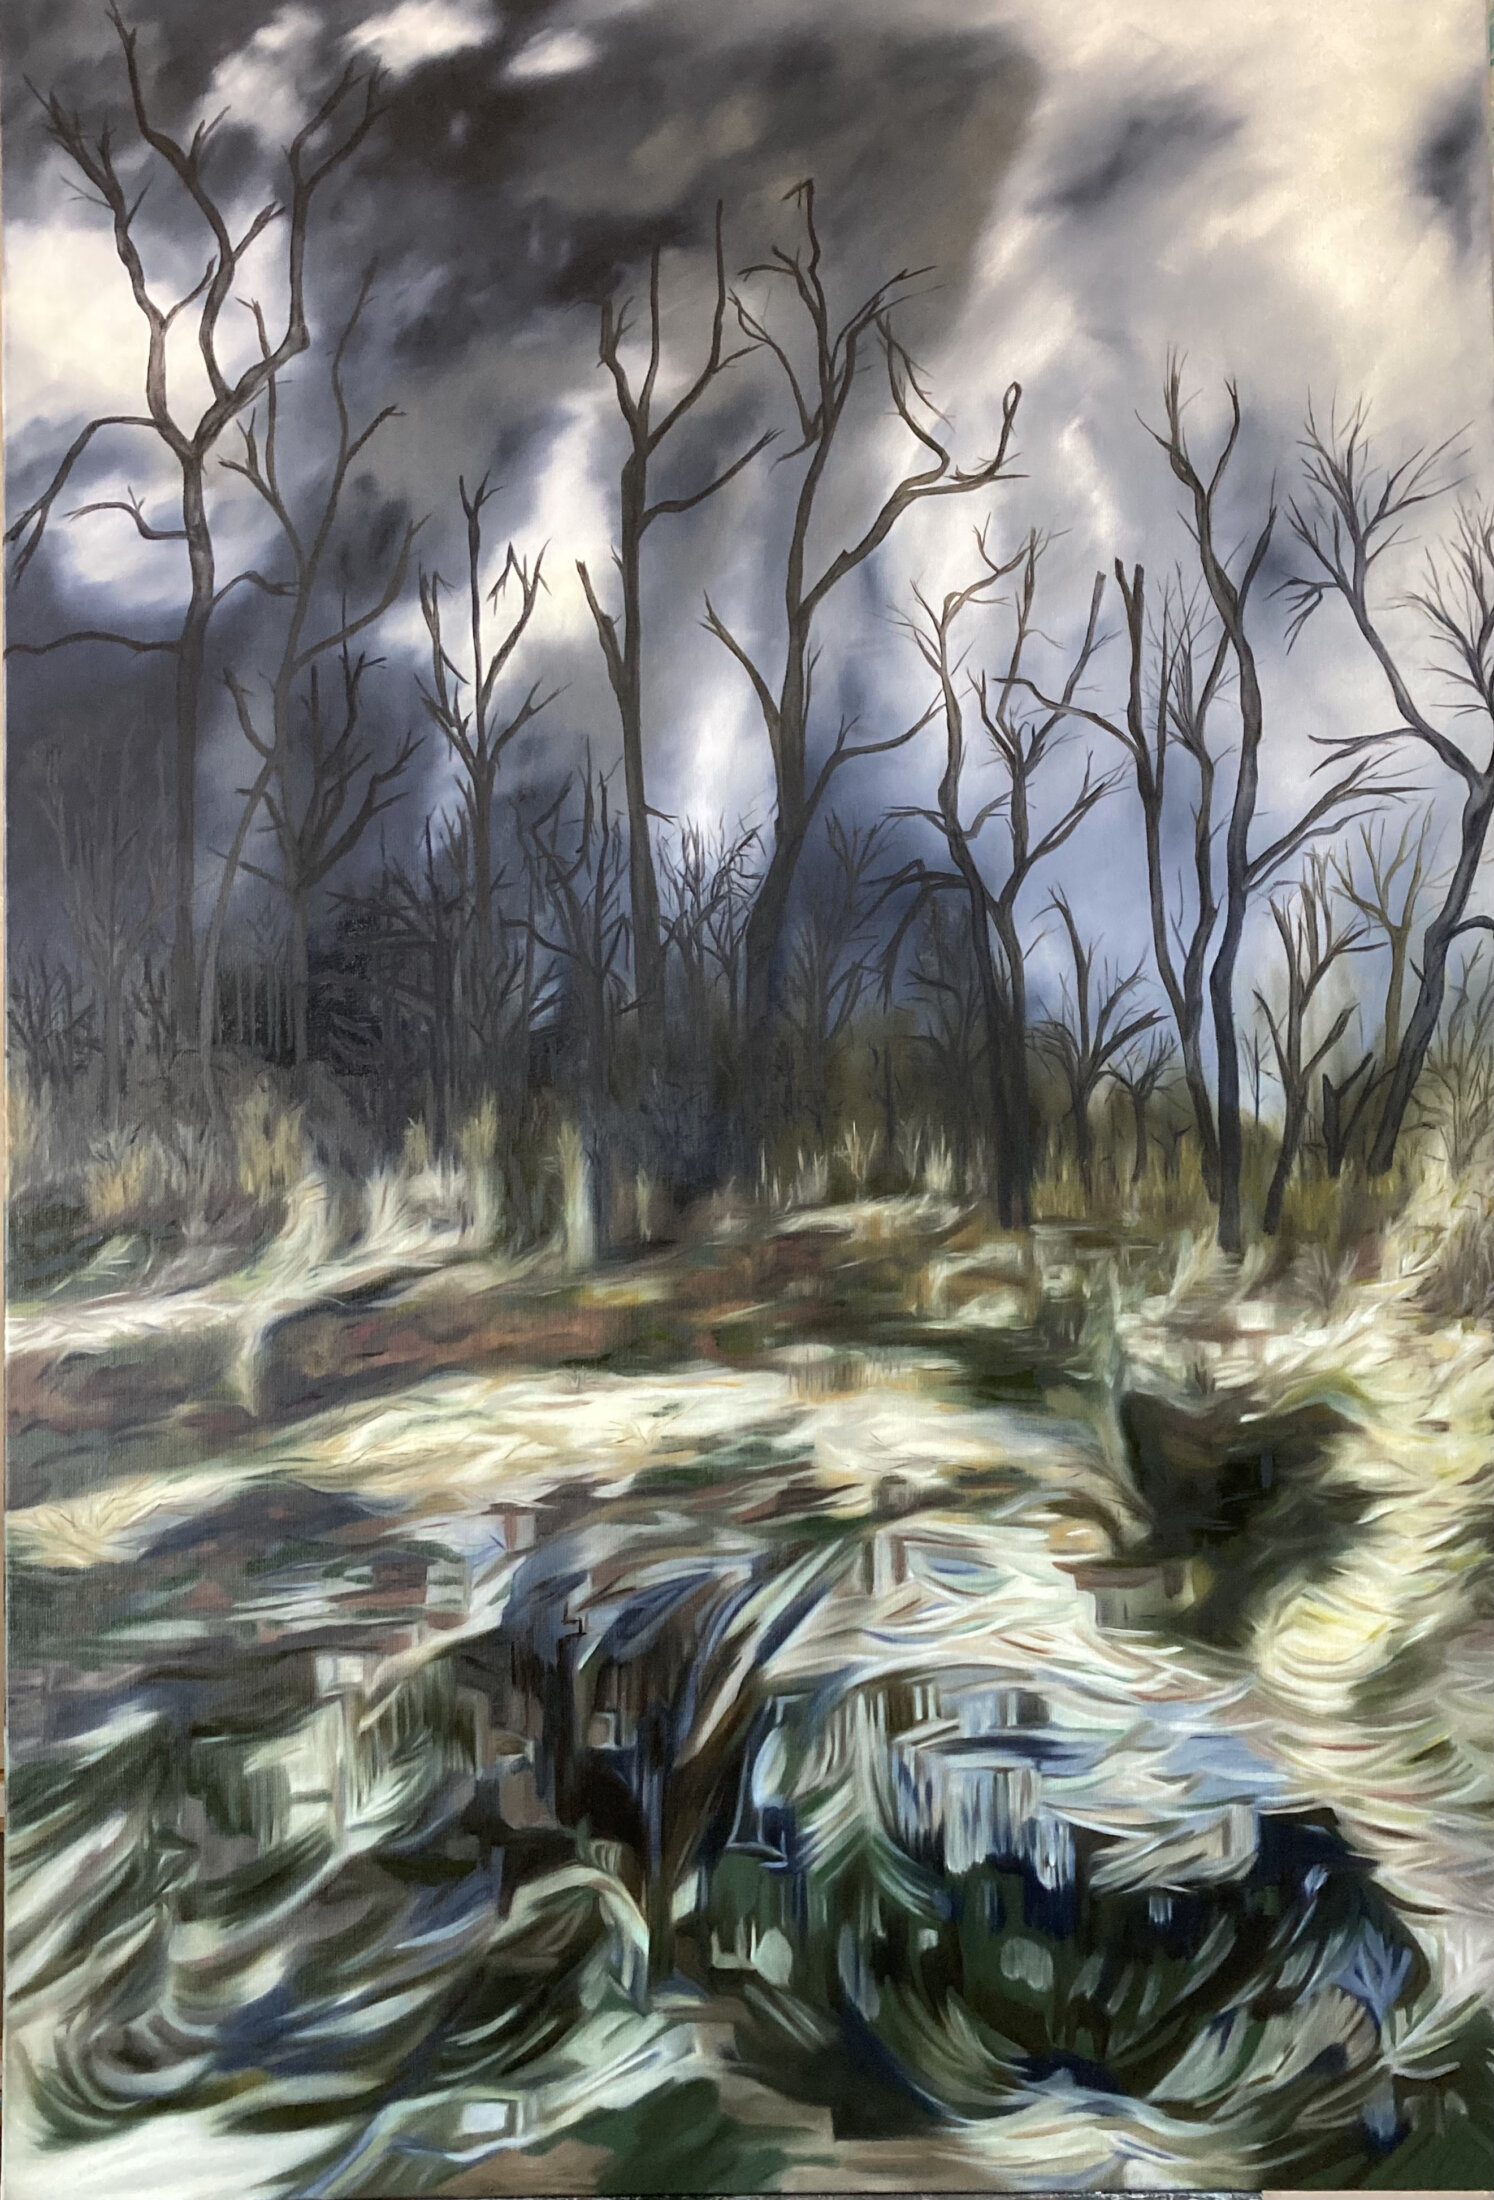 Tableau figuratif, du peintre Nadia Vuillaume, représentant un paysage après l’orage avec un ciel tourmenté.